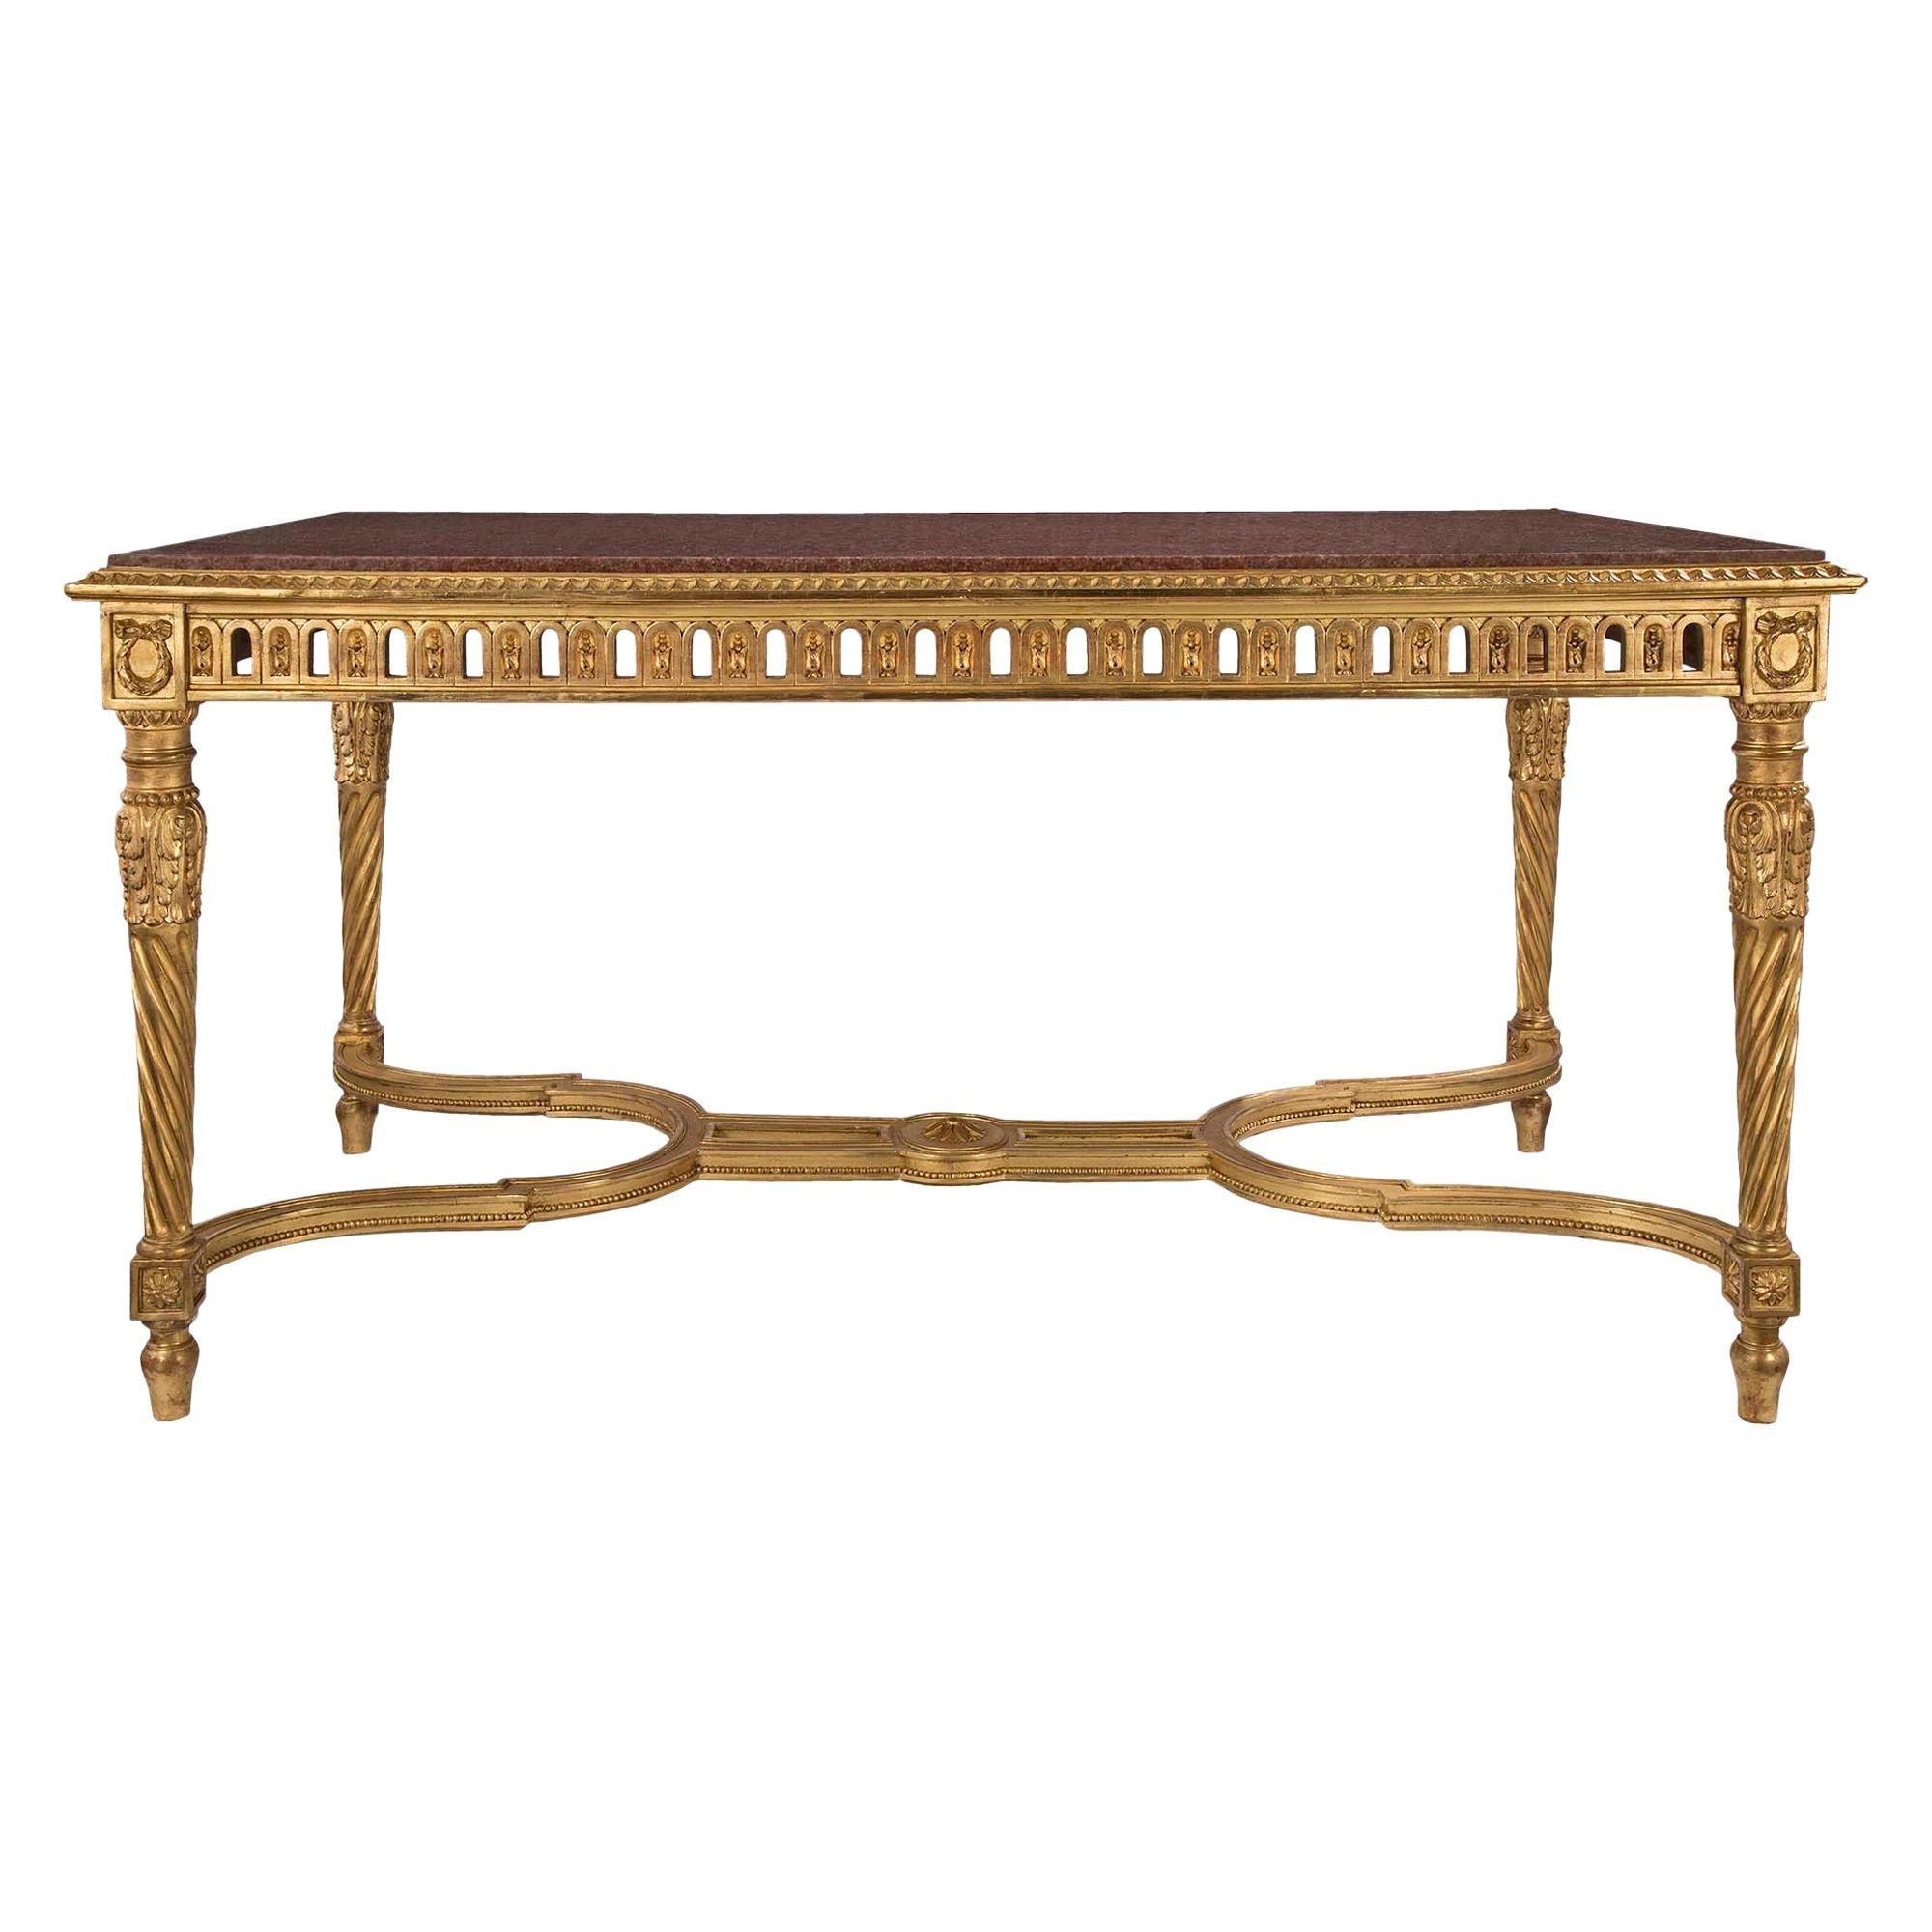 Table centrale française de style Louis XVI du 19ème siècle en bois doré et marbre